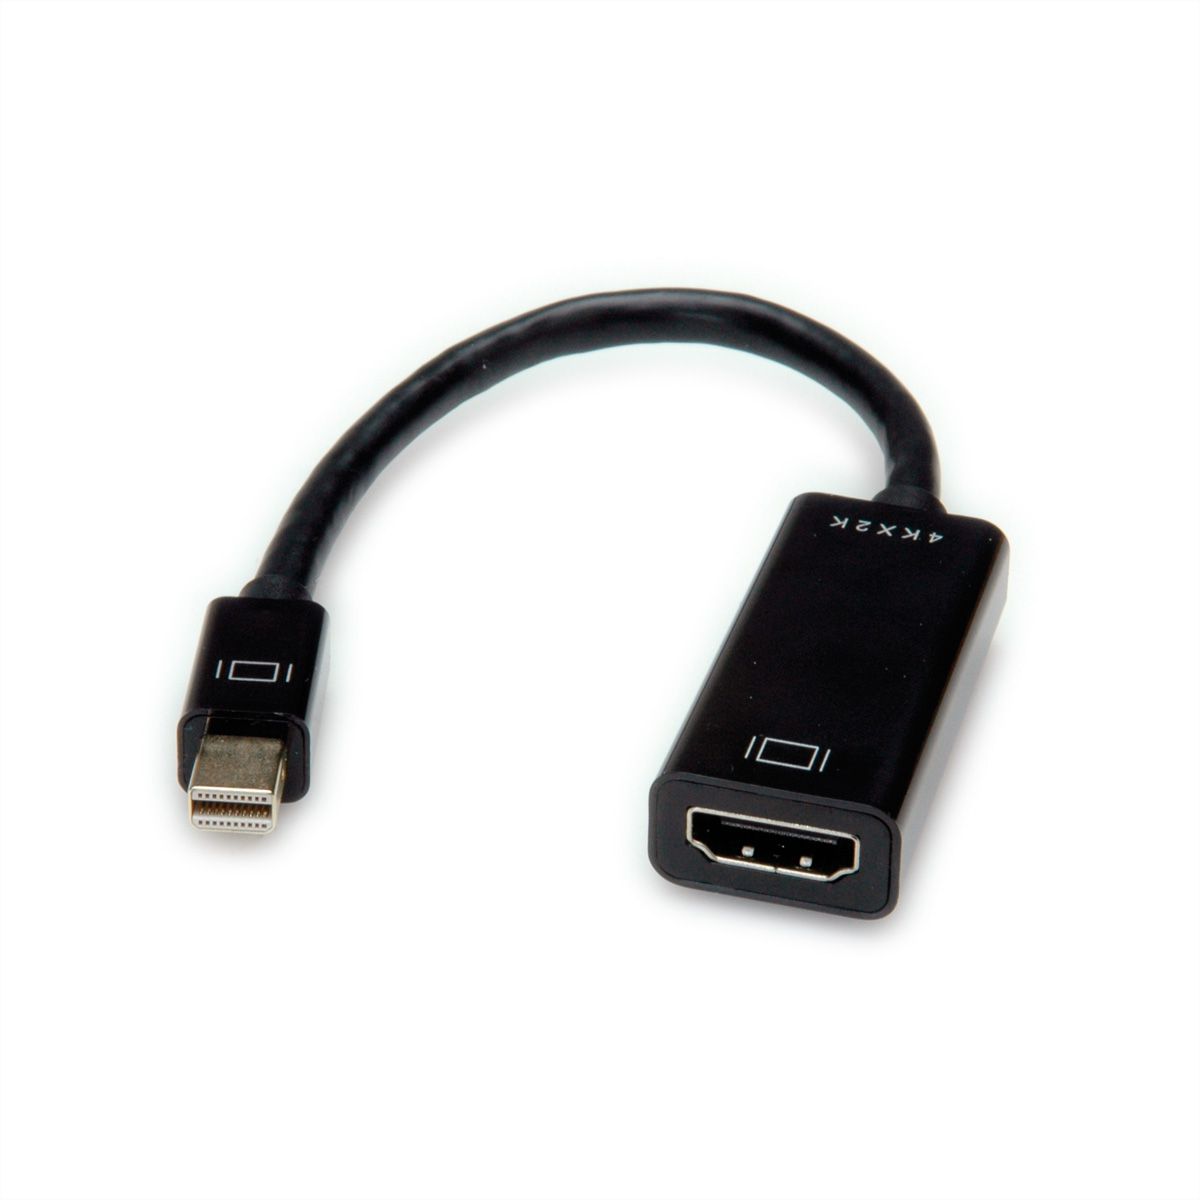 VALUE Adaptateur DisplayPort - HDMI, DP M-HDMI F - SECOMP France